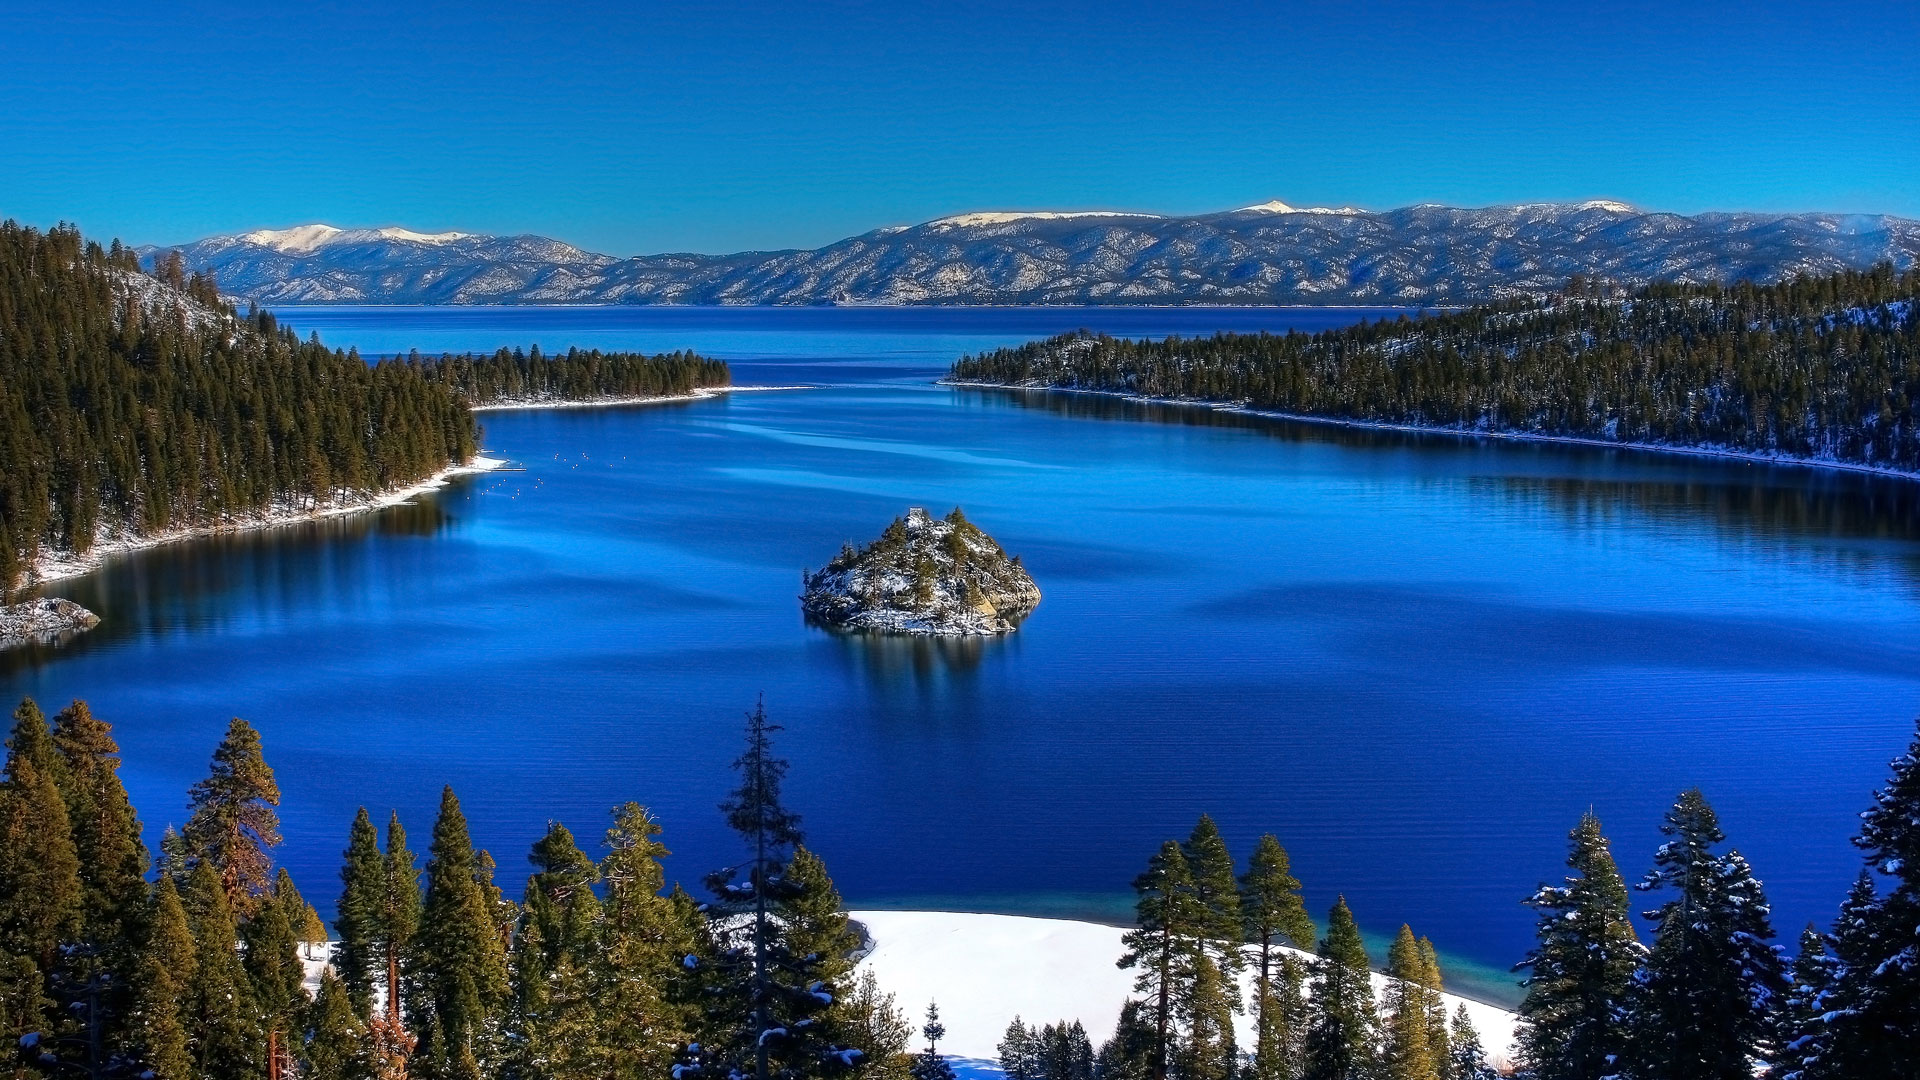 Le lac Tahoe, le plus beau des États-Unis. Situé à la fois en Californie et dans le Nevada, le lac Tahoe n’a rien de comparable en taille avec les Grands Lacs du nord-est des États-Unis, mais les surpasse en beauté, d’après des lecteurs américains sondés par USA Today. © Michael, Wikipédia, cc by 2.0